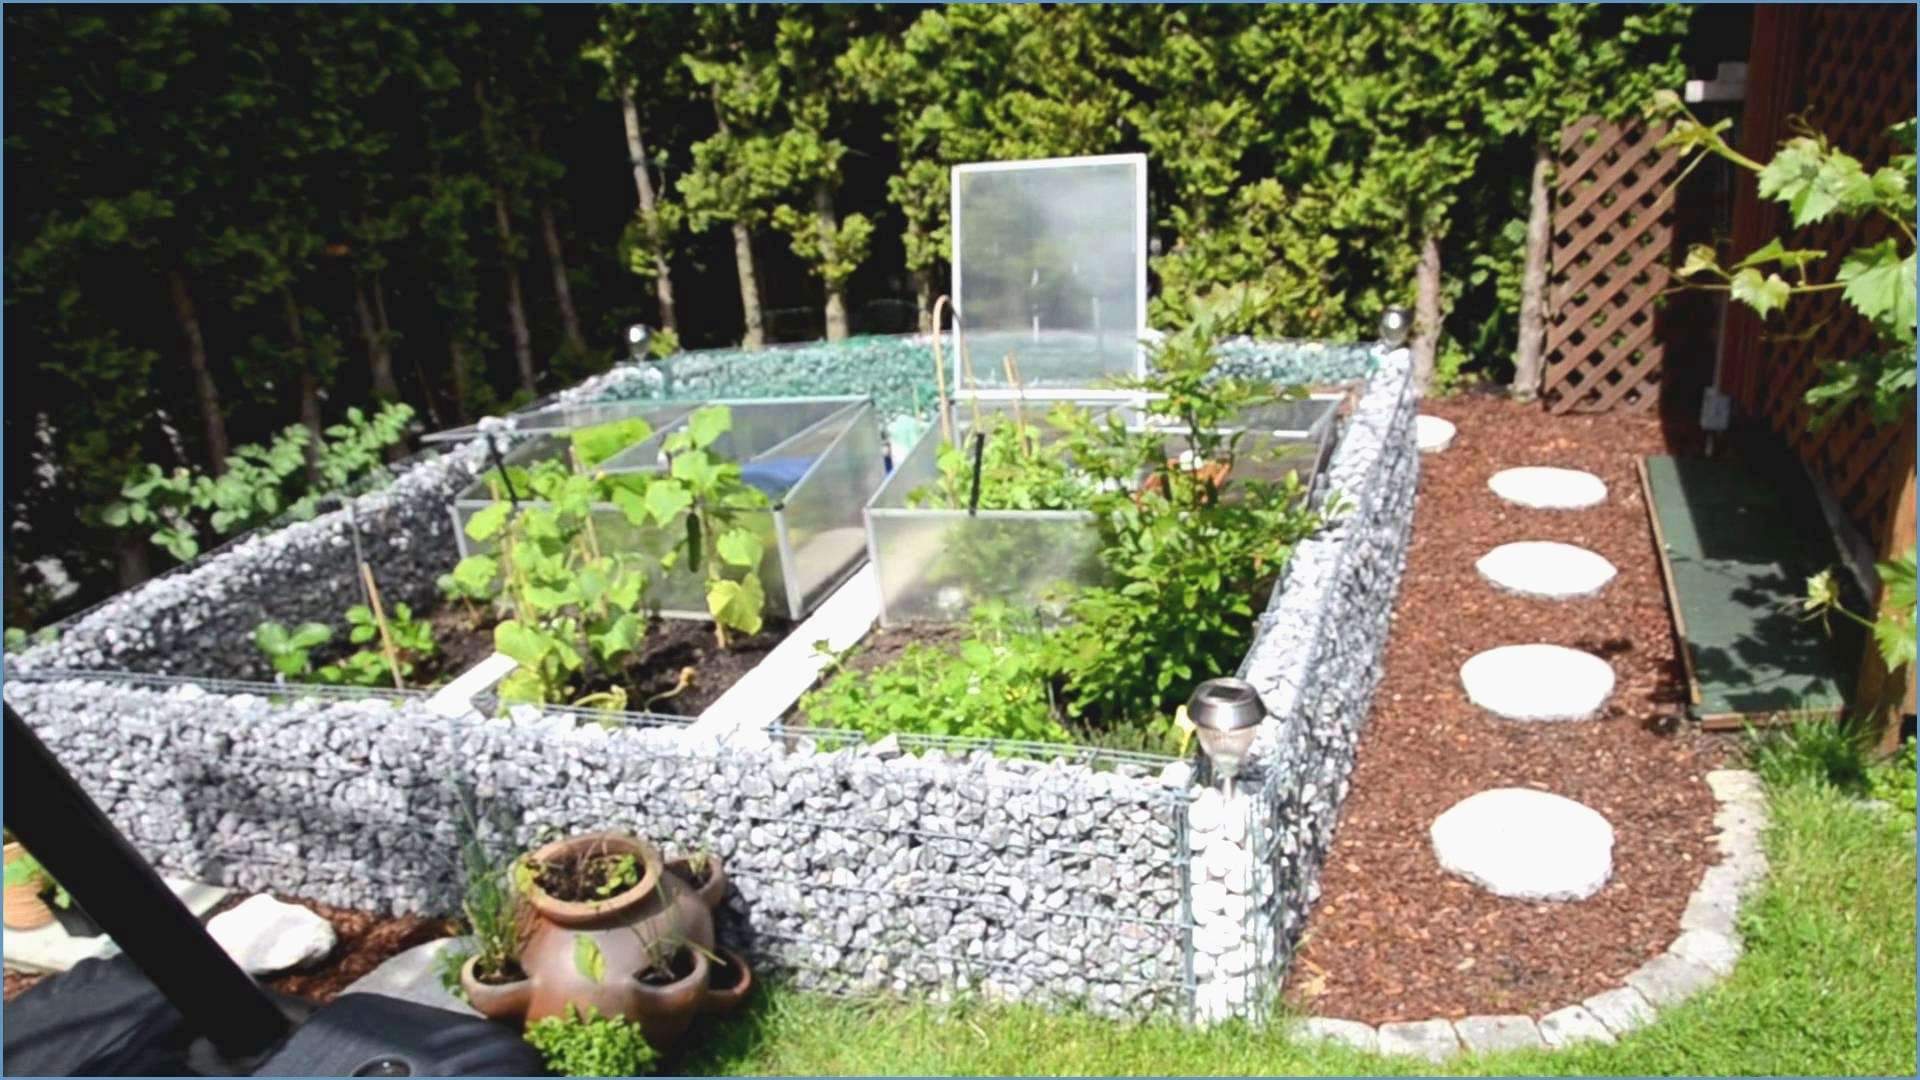 Mediterrane Deko Ideen Best Of Mediterranen Garten Anlegen Das Beste Von Haus Plant Ideen